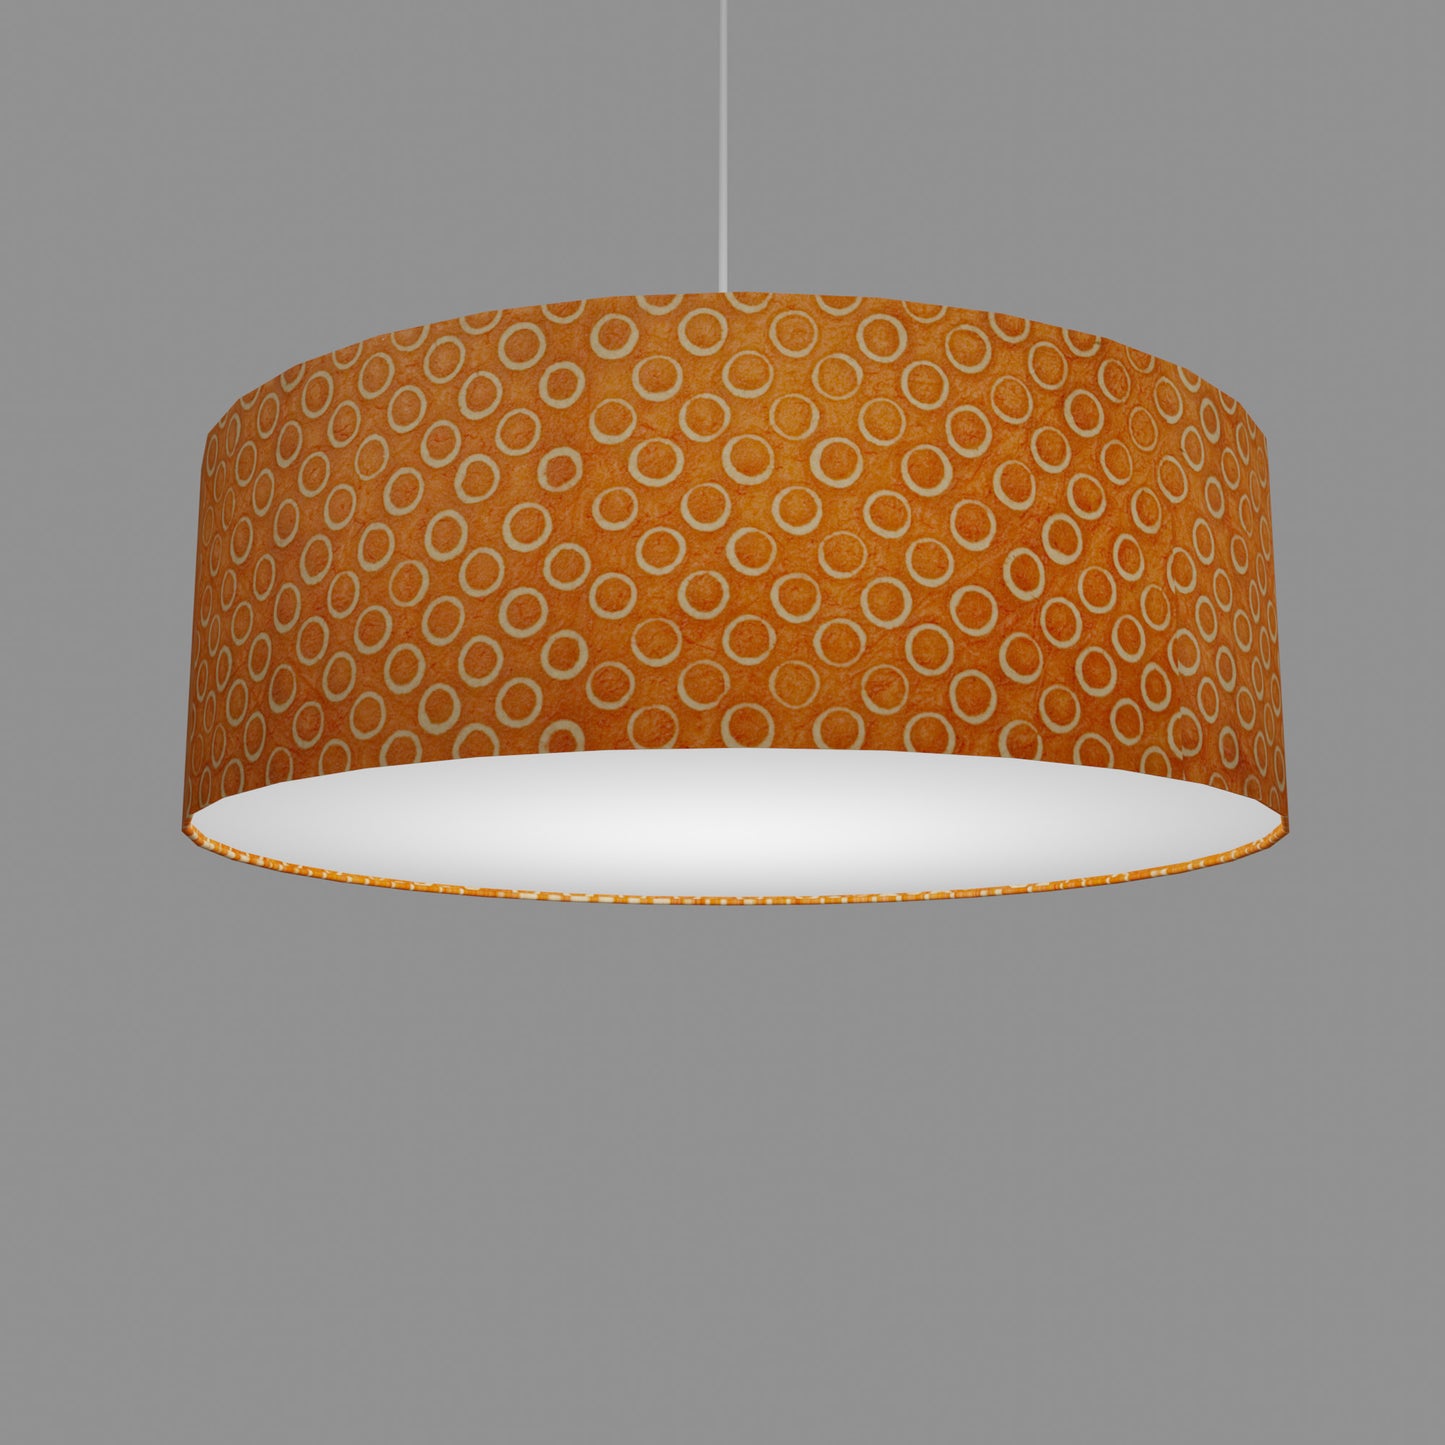 Drum Lamp Shade - P03 - Batik Orange Circles, 60cm(d) x 20cm(h)